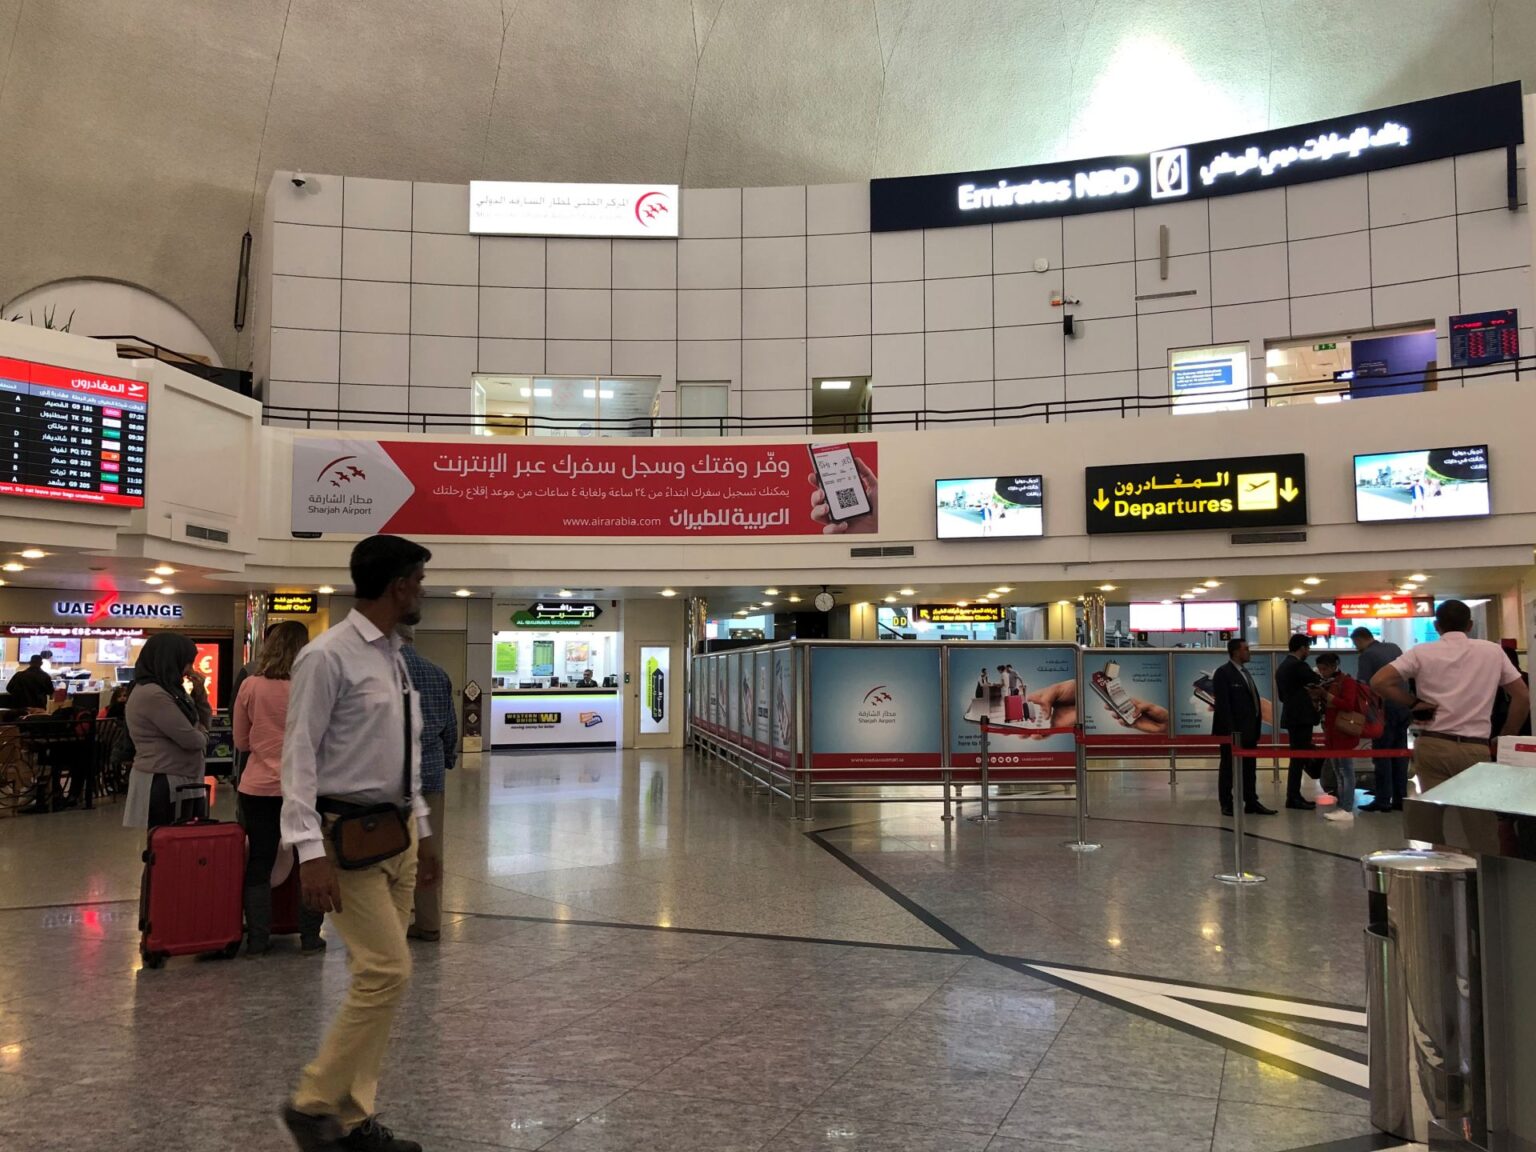 sharjah airport visit visa